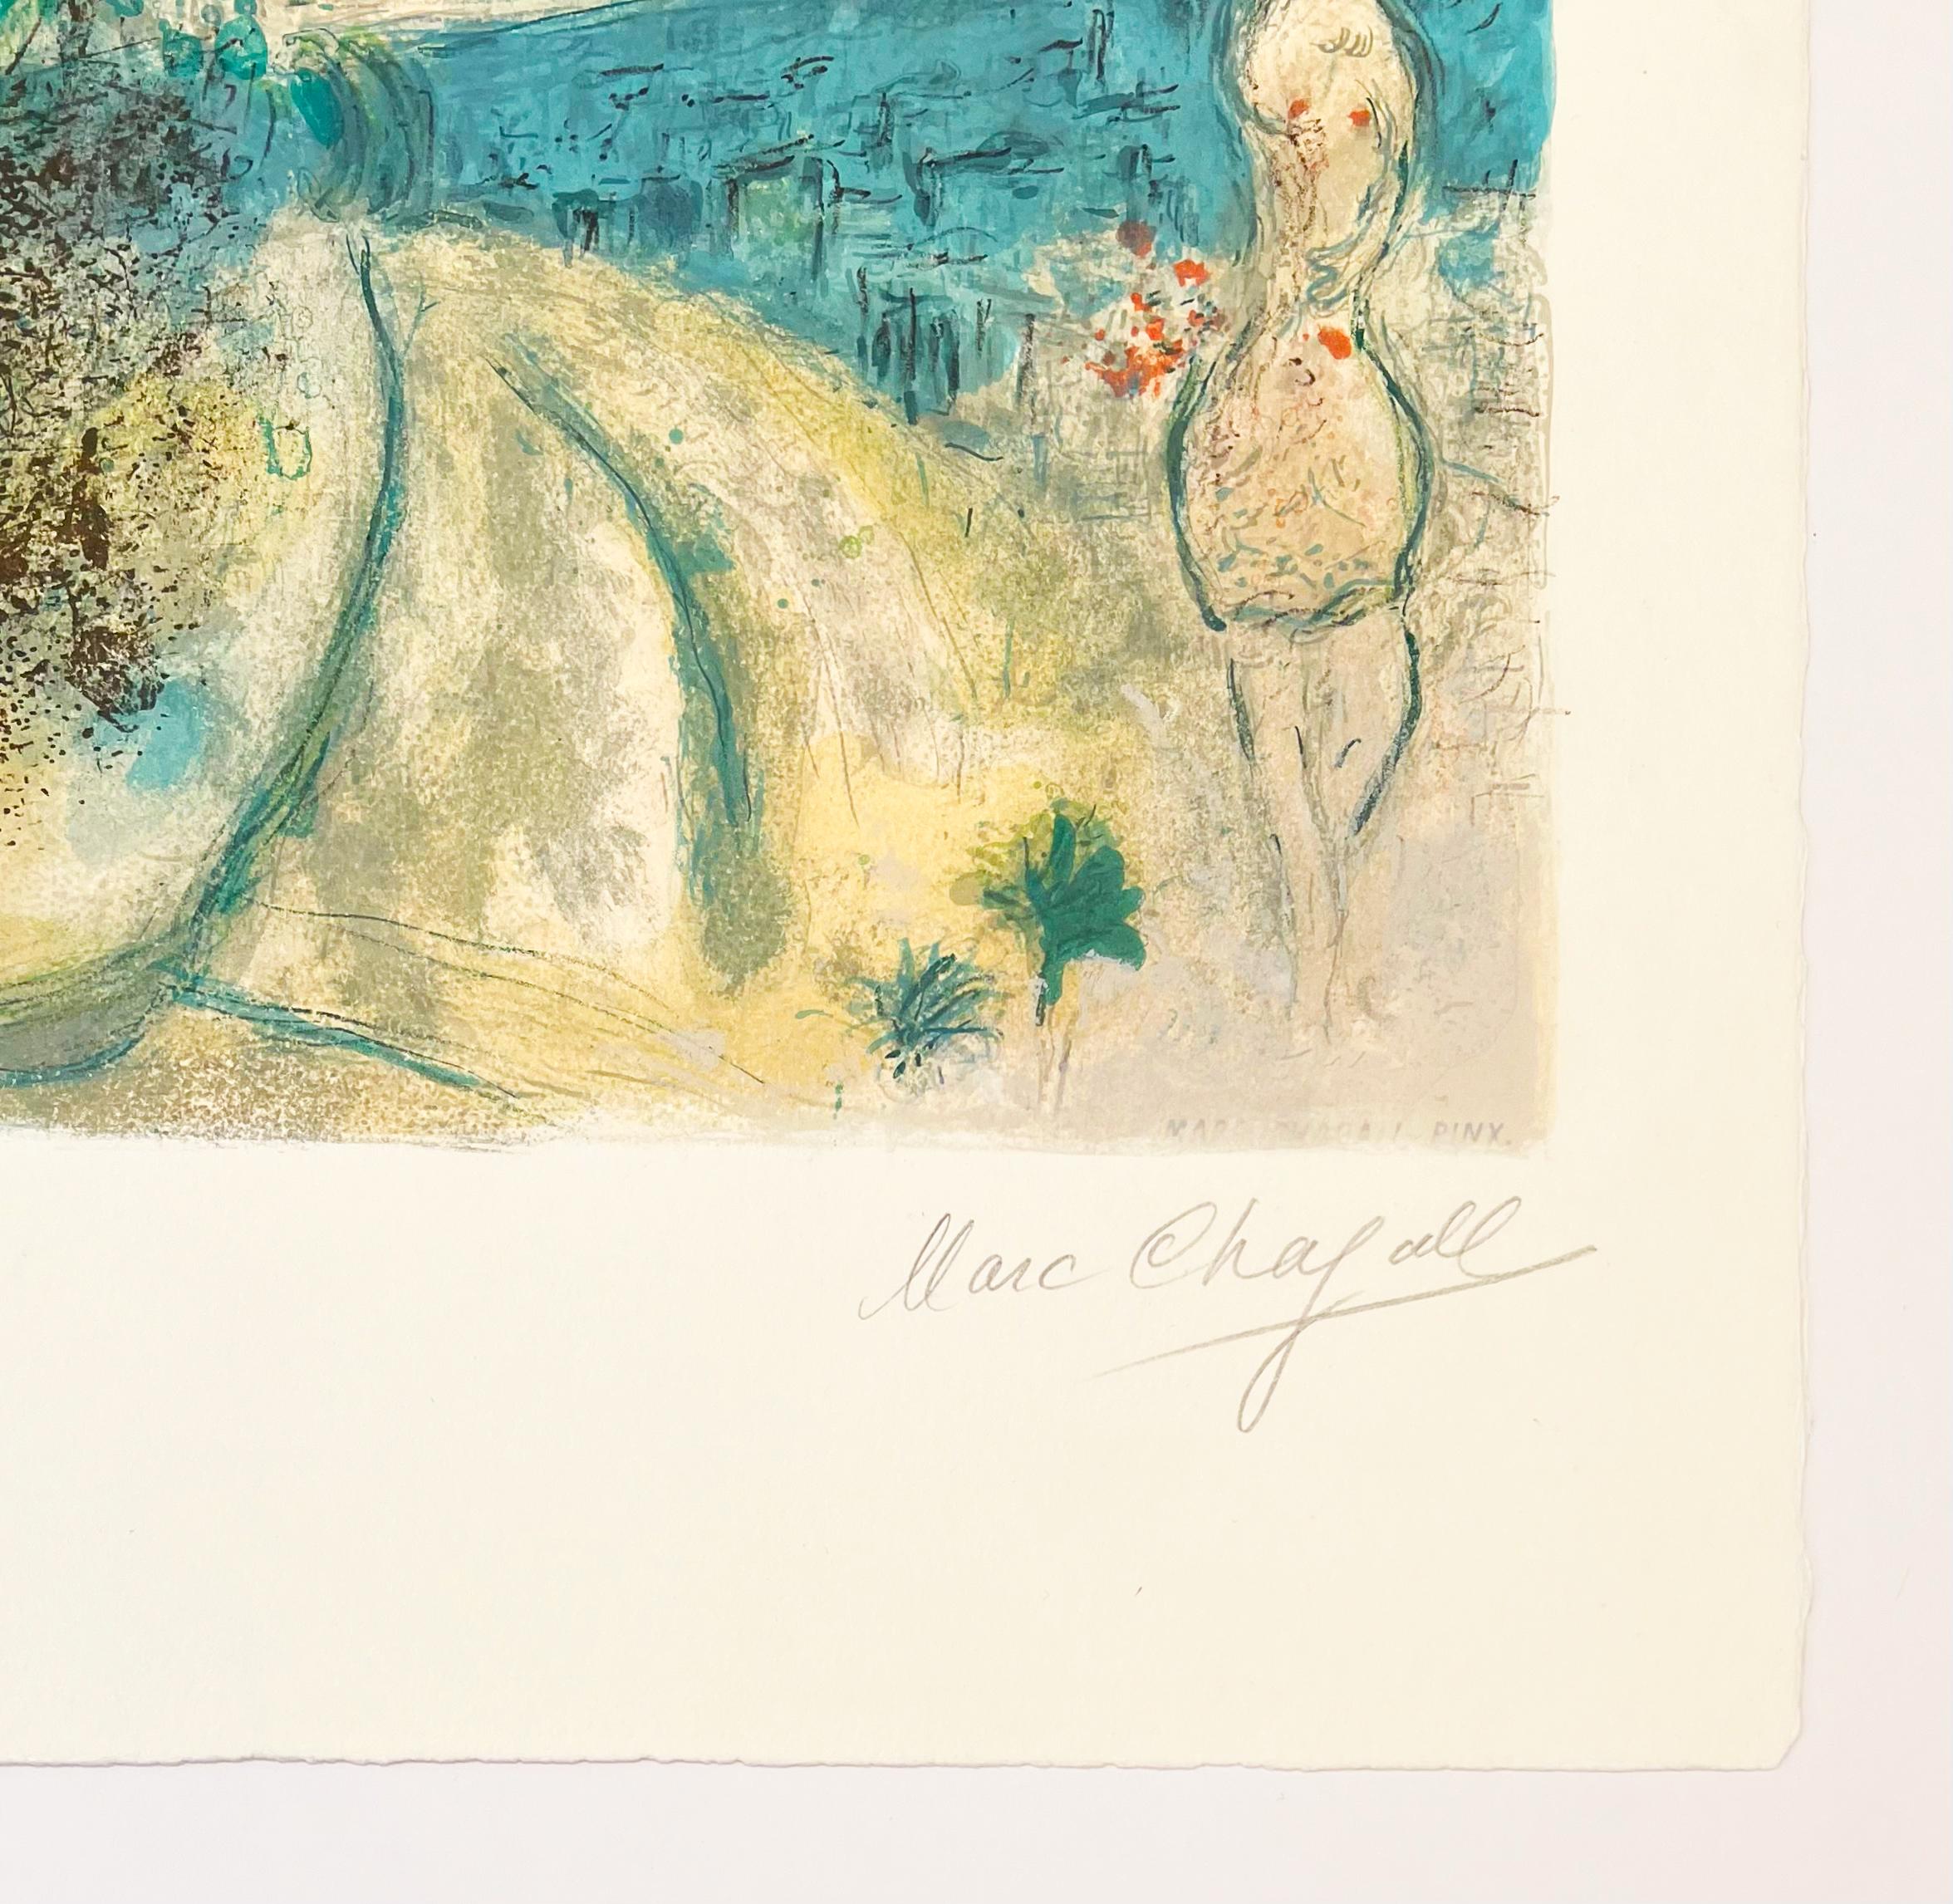 Künstler: Marc Chagall (nach)
Titel: Rosen und Mimosen
Portfolio: Nizza und die Côte d'Azur
Medium: Lithographie
Datum: 1967
Auflage: 149/150
Rahmengröße: 37 1/2